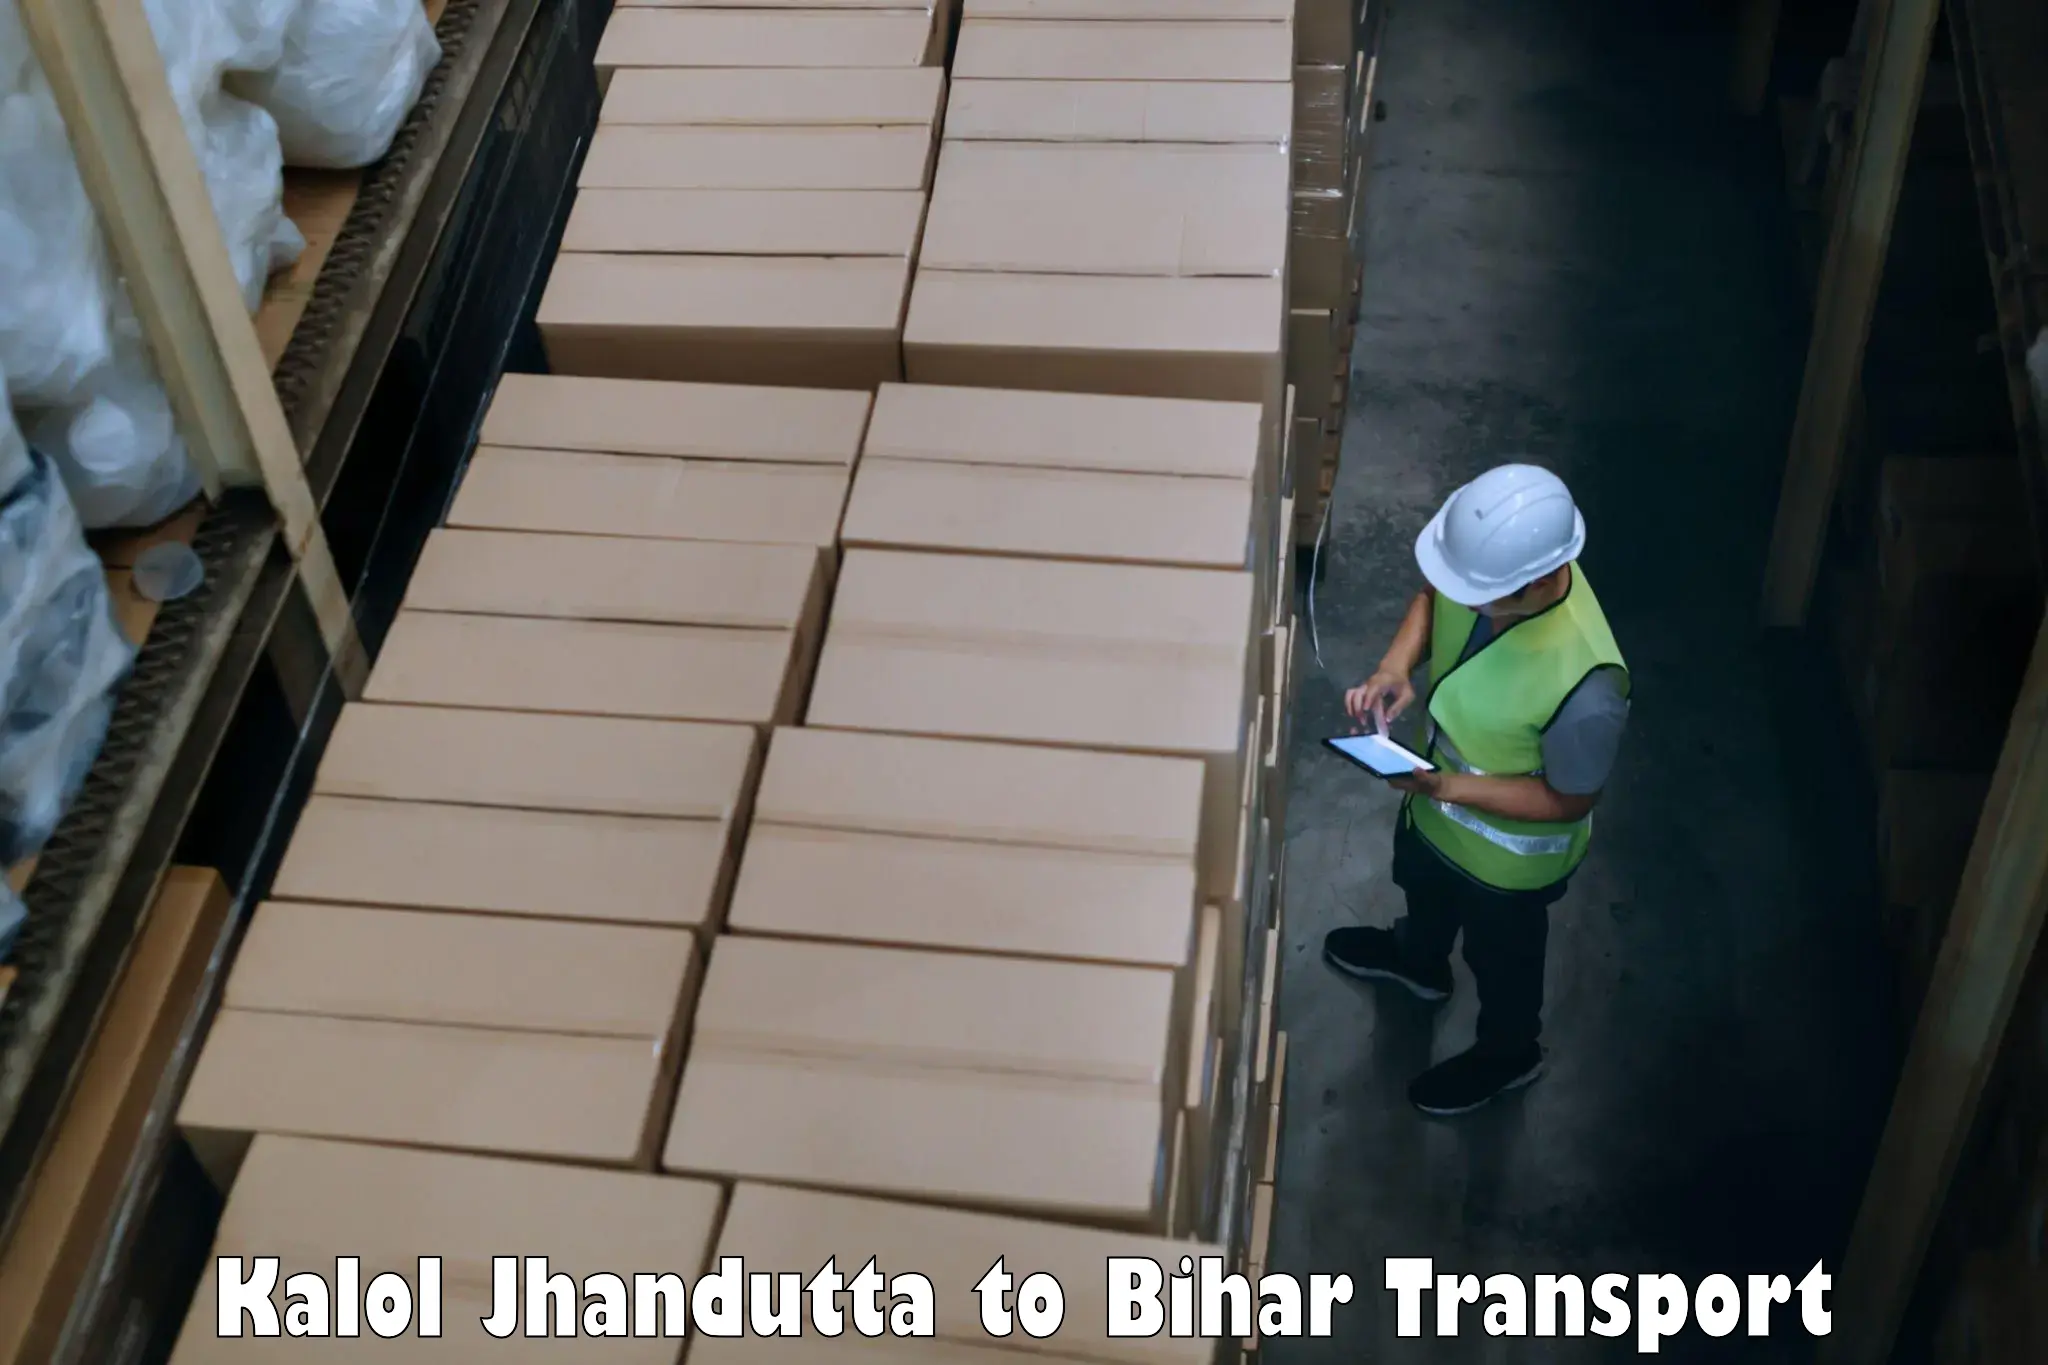 Vehicle transport services Kalol Jhandutta to Kamtaul